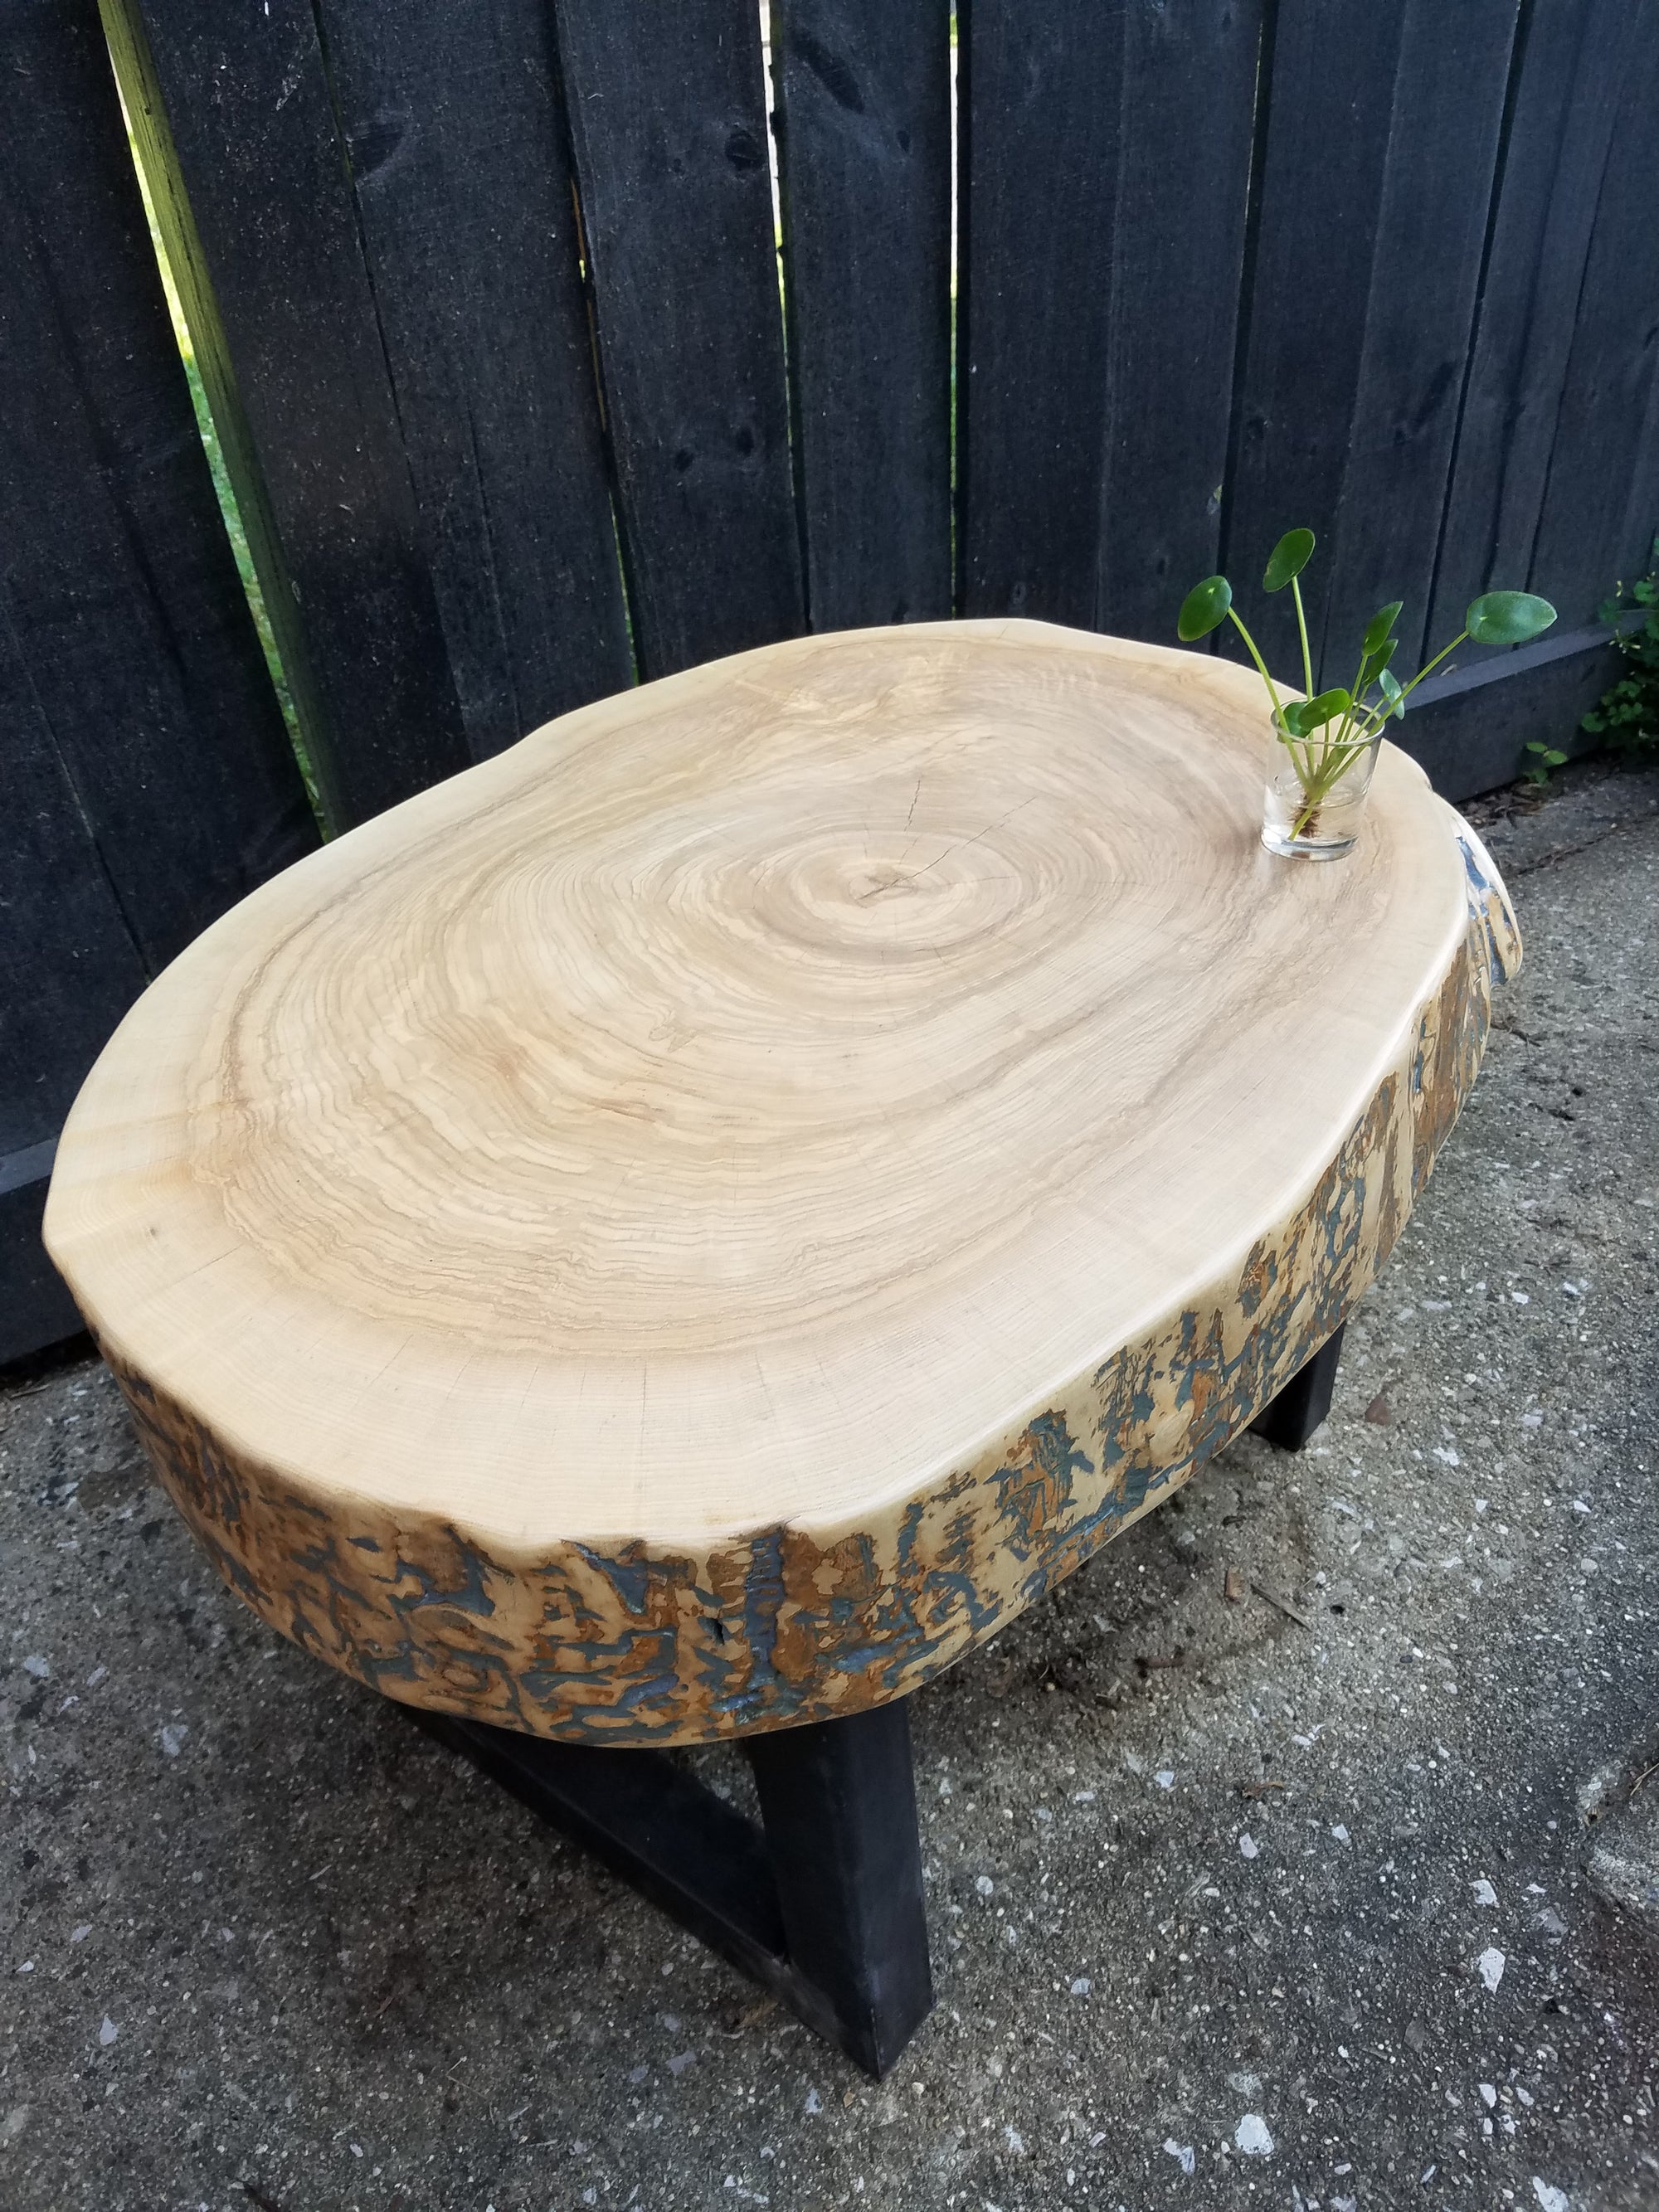 tree slice table